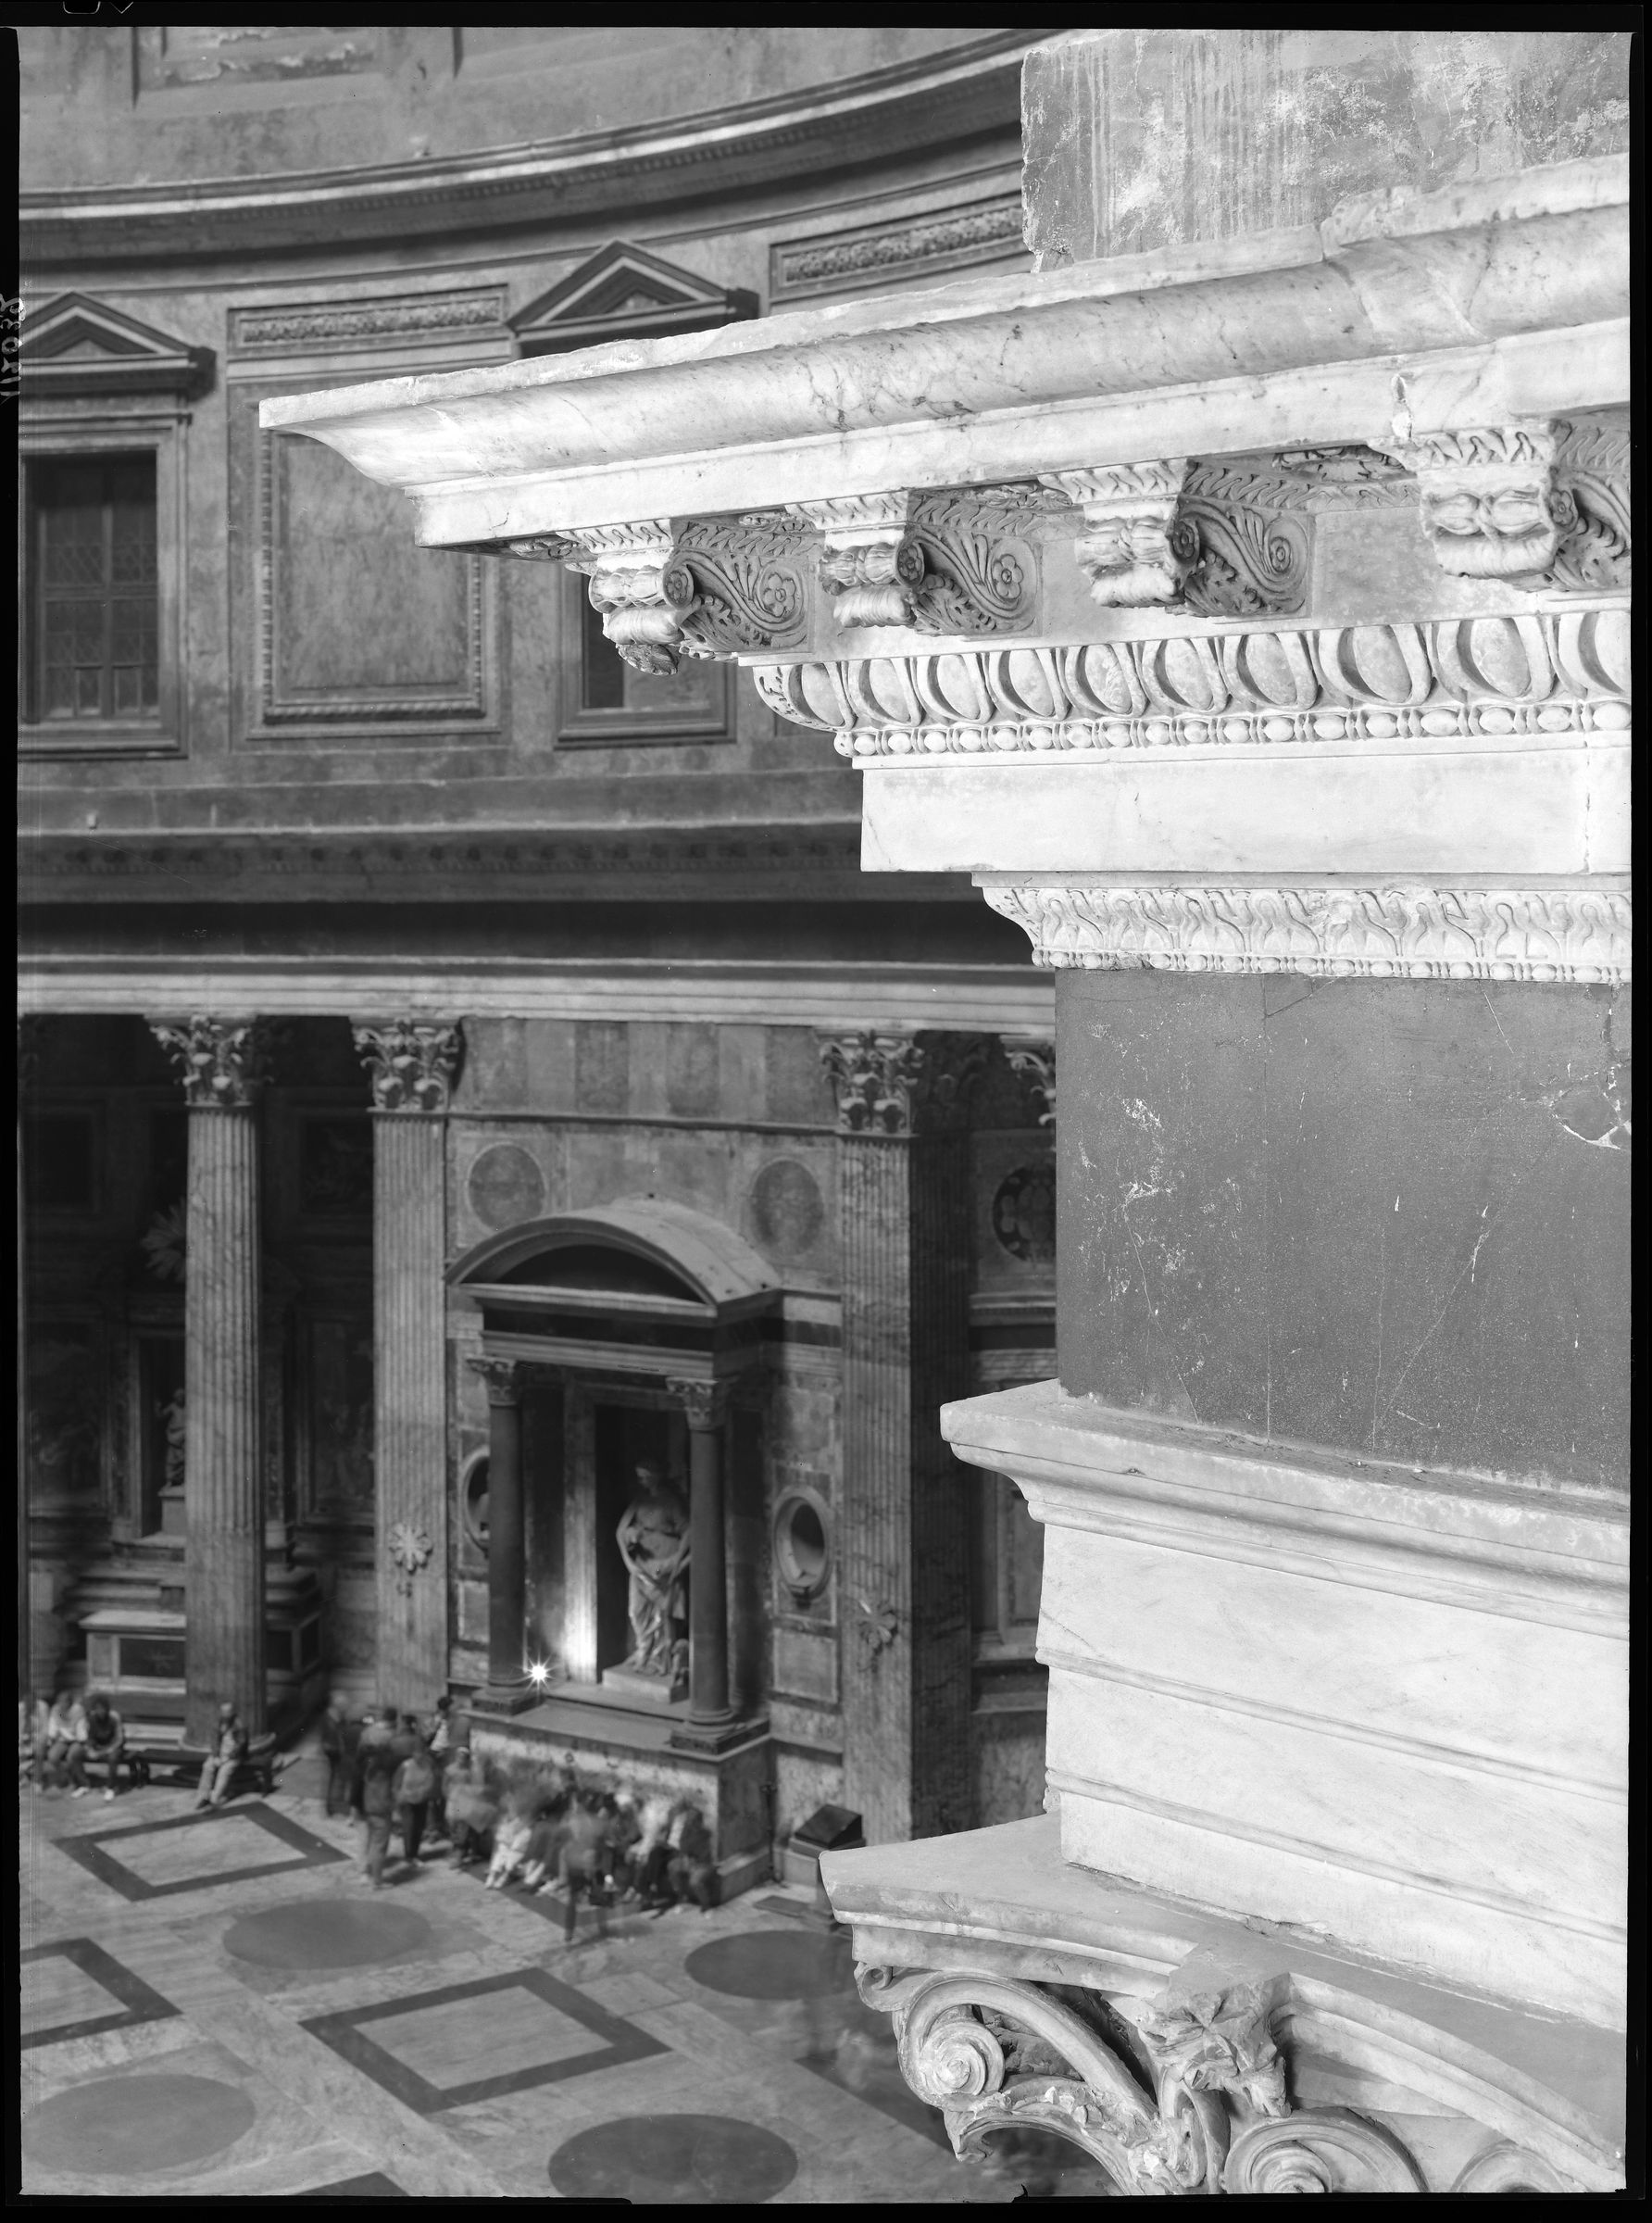 Fotografo non identificato, Roma - Pantheon,1951-2000, 18x24 cm, E112032